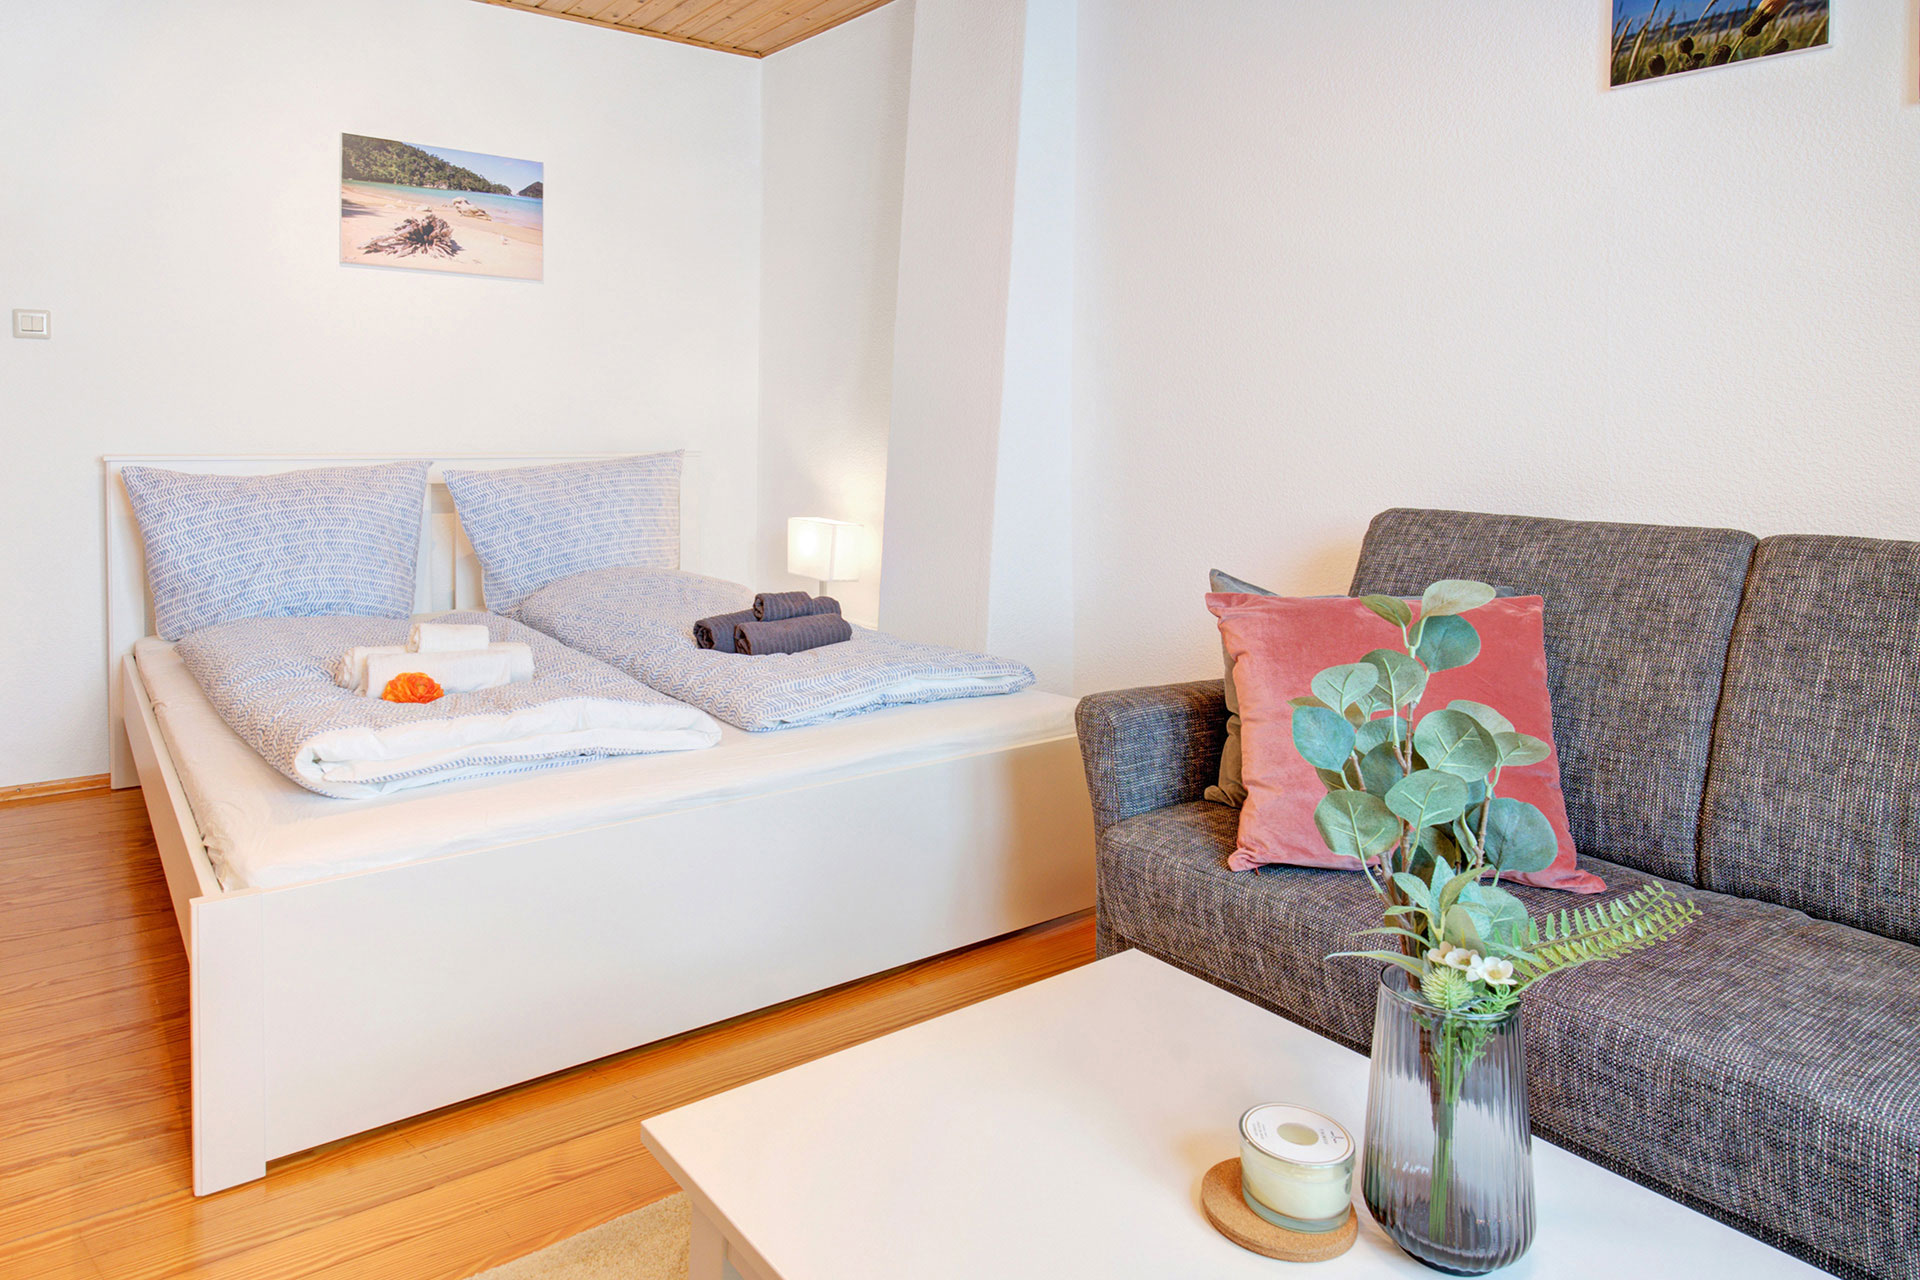 schlafzimmer mit sofa und eucalyptus auf tisch von ferienhaus professionell fotografiert